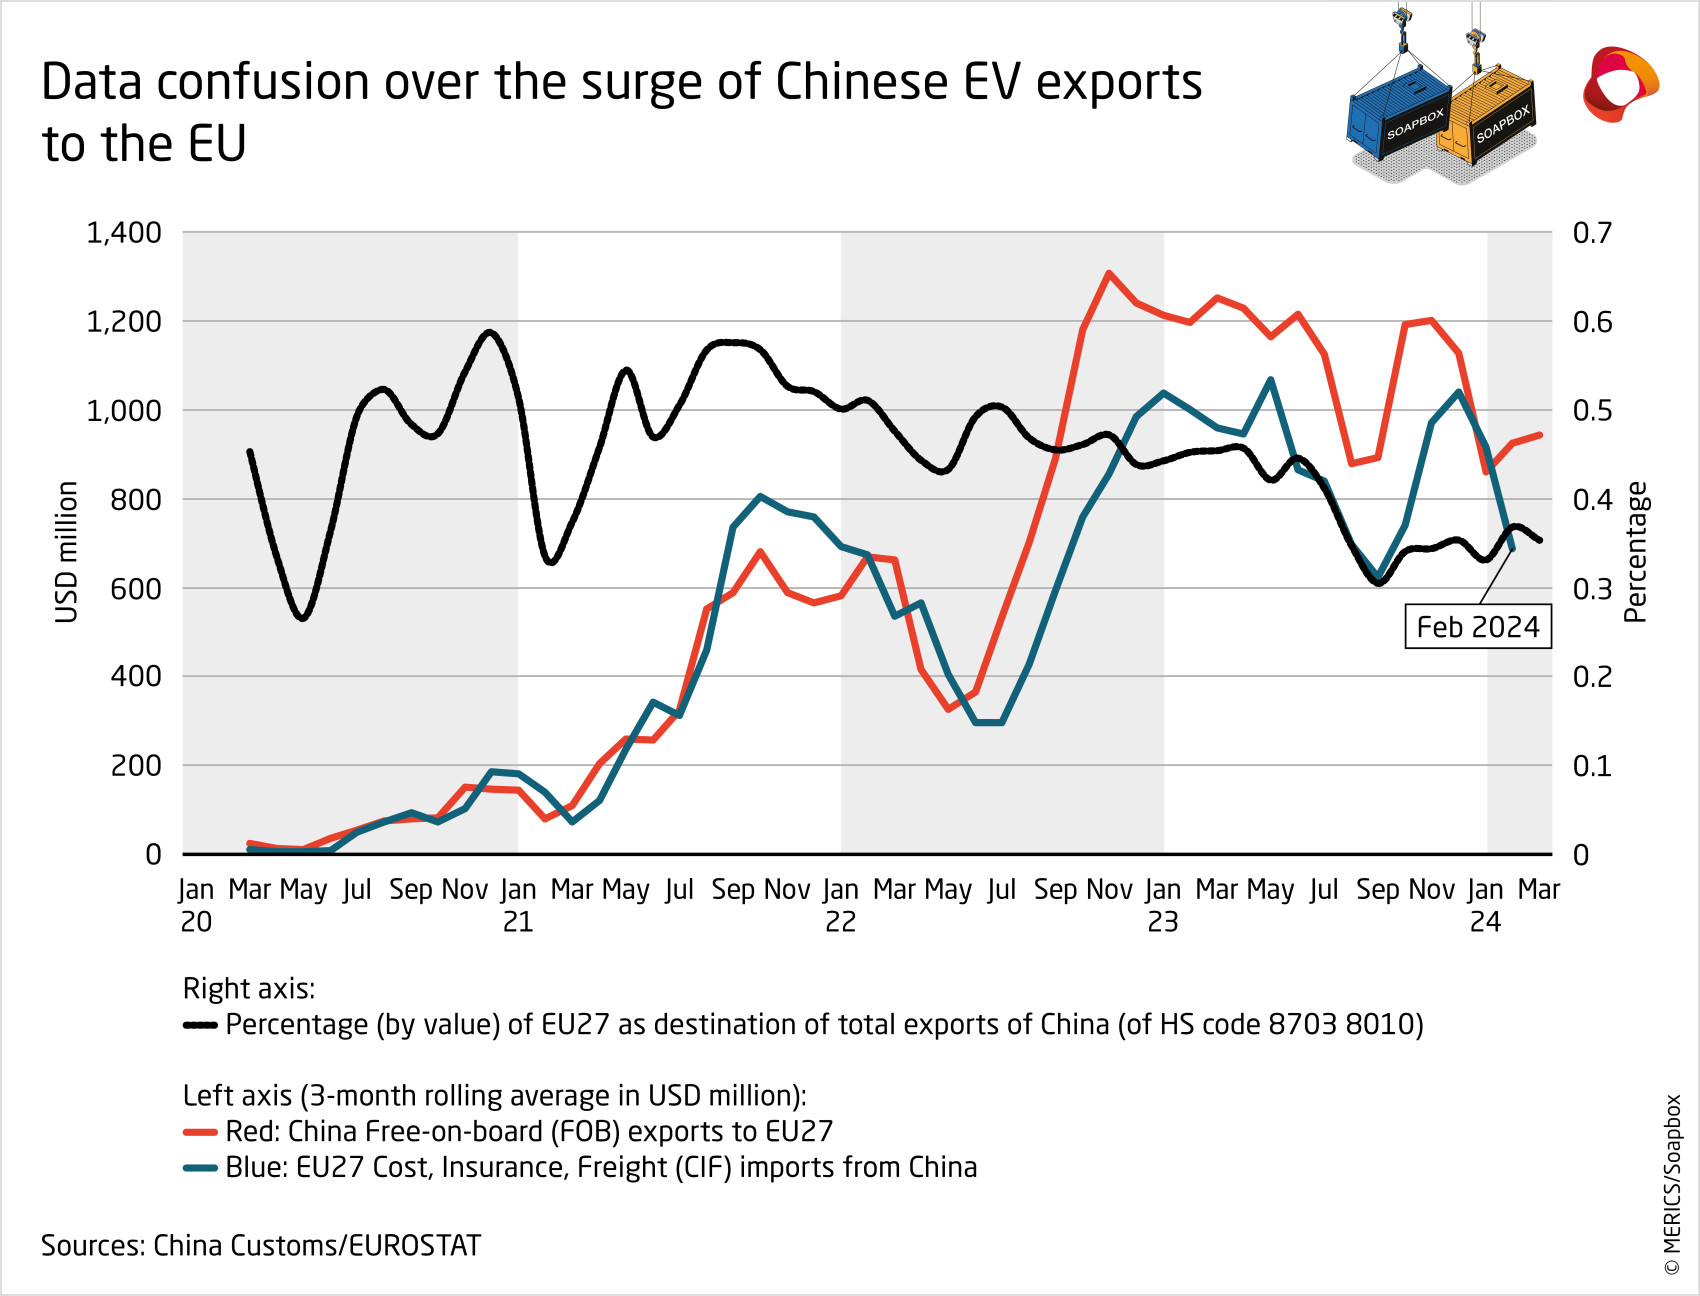 China fob exports cif imports